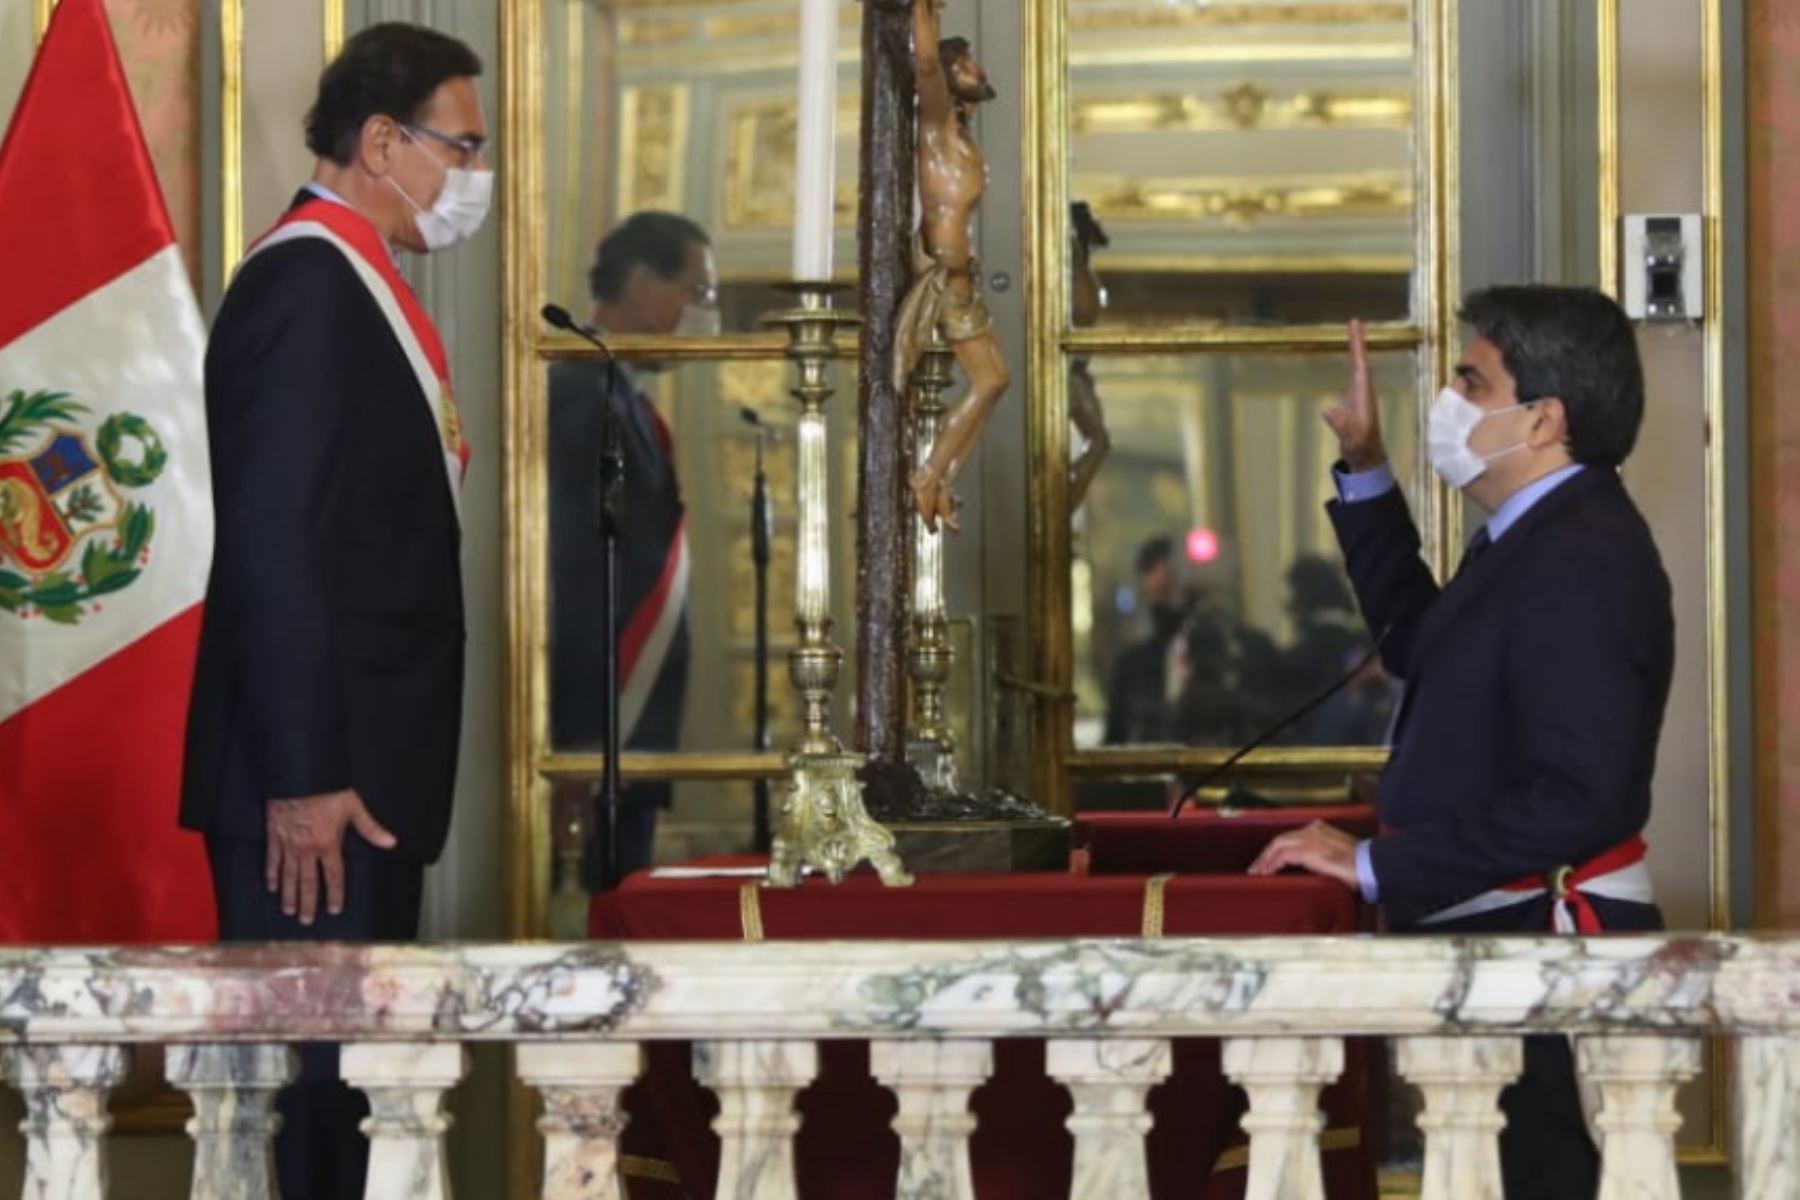 El presidente de la República, Martín Vizcarra, toma juramento a Martín Benavides como ministro de Educación.

Foto: ANDINA/ Prensa Presidencia